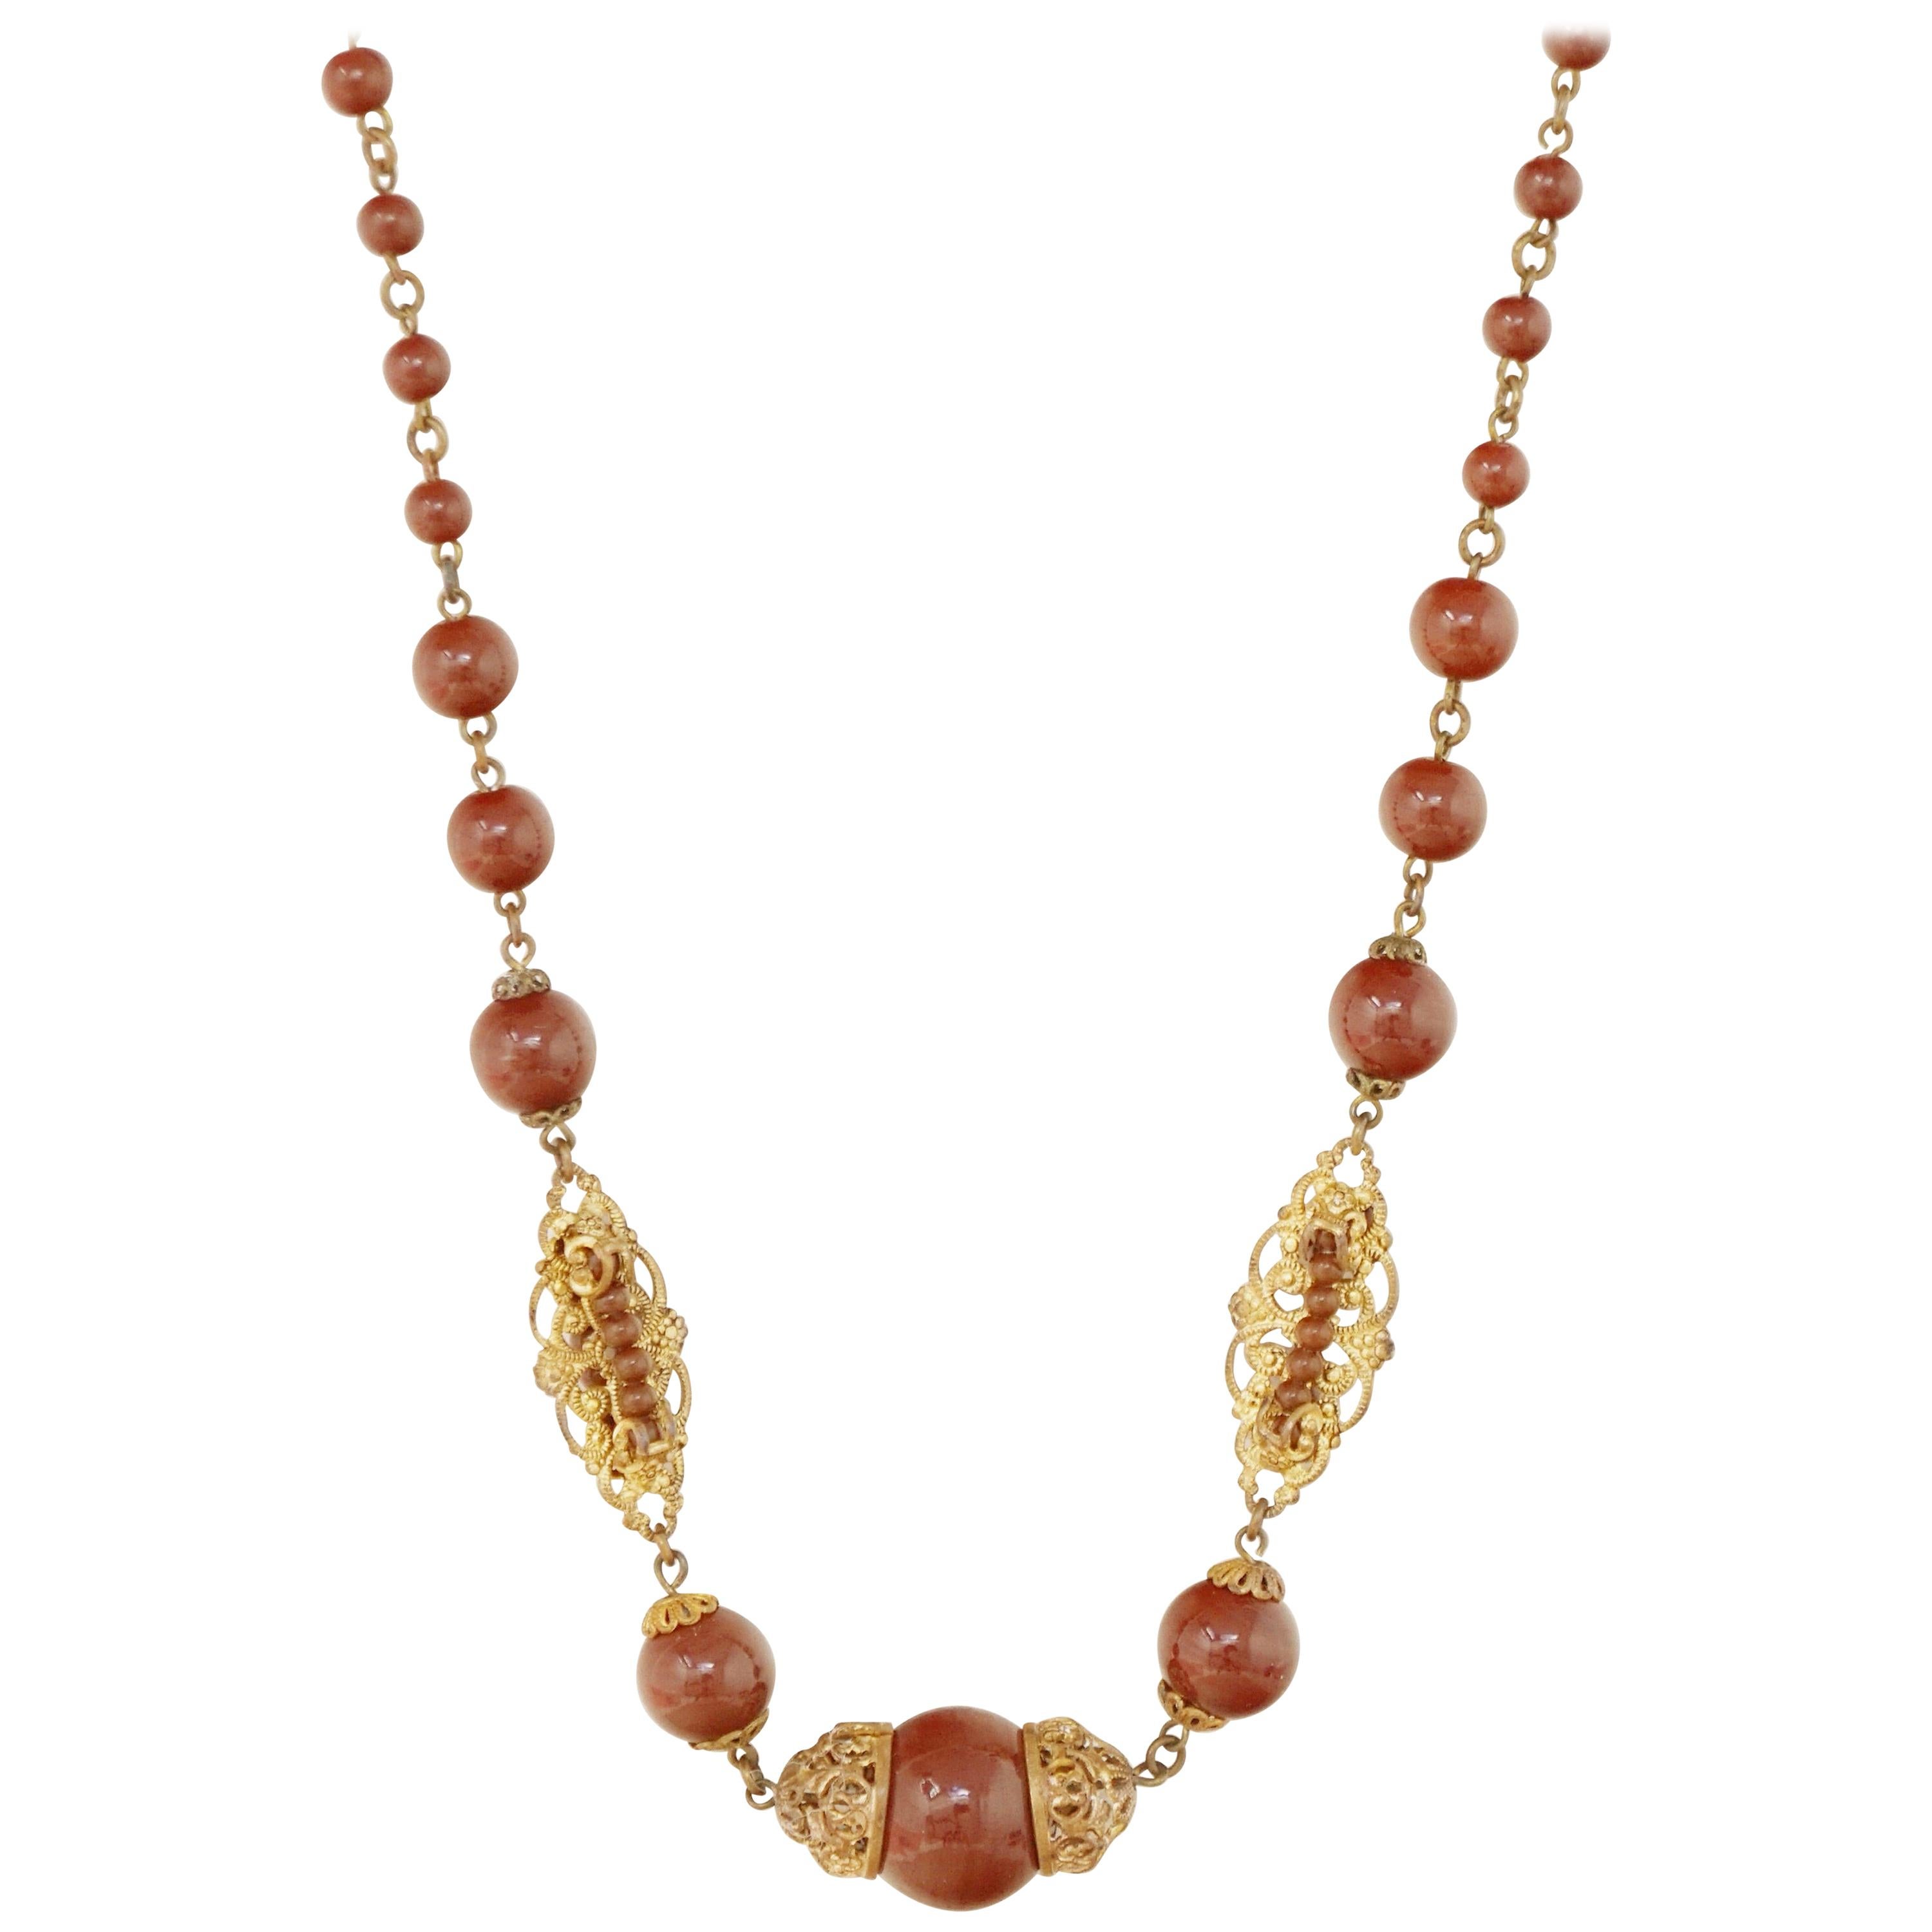 Vintage Ornate Filigree Czech Glass Necklace, 1940s